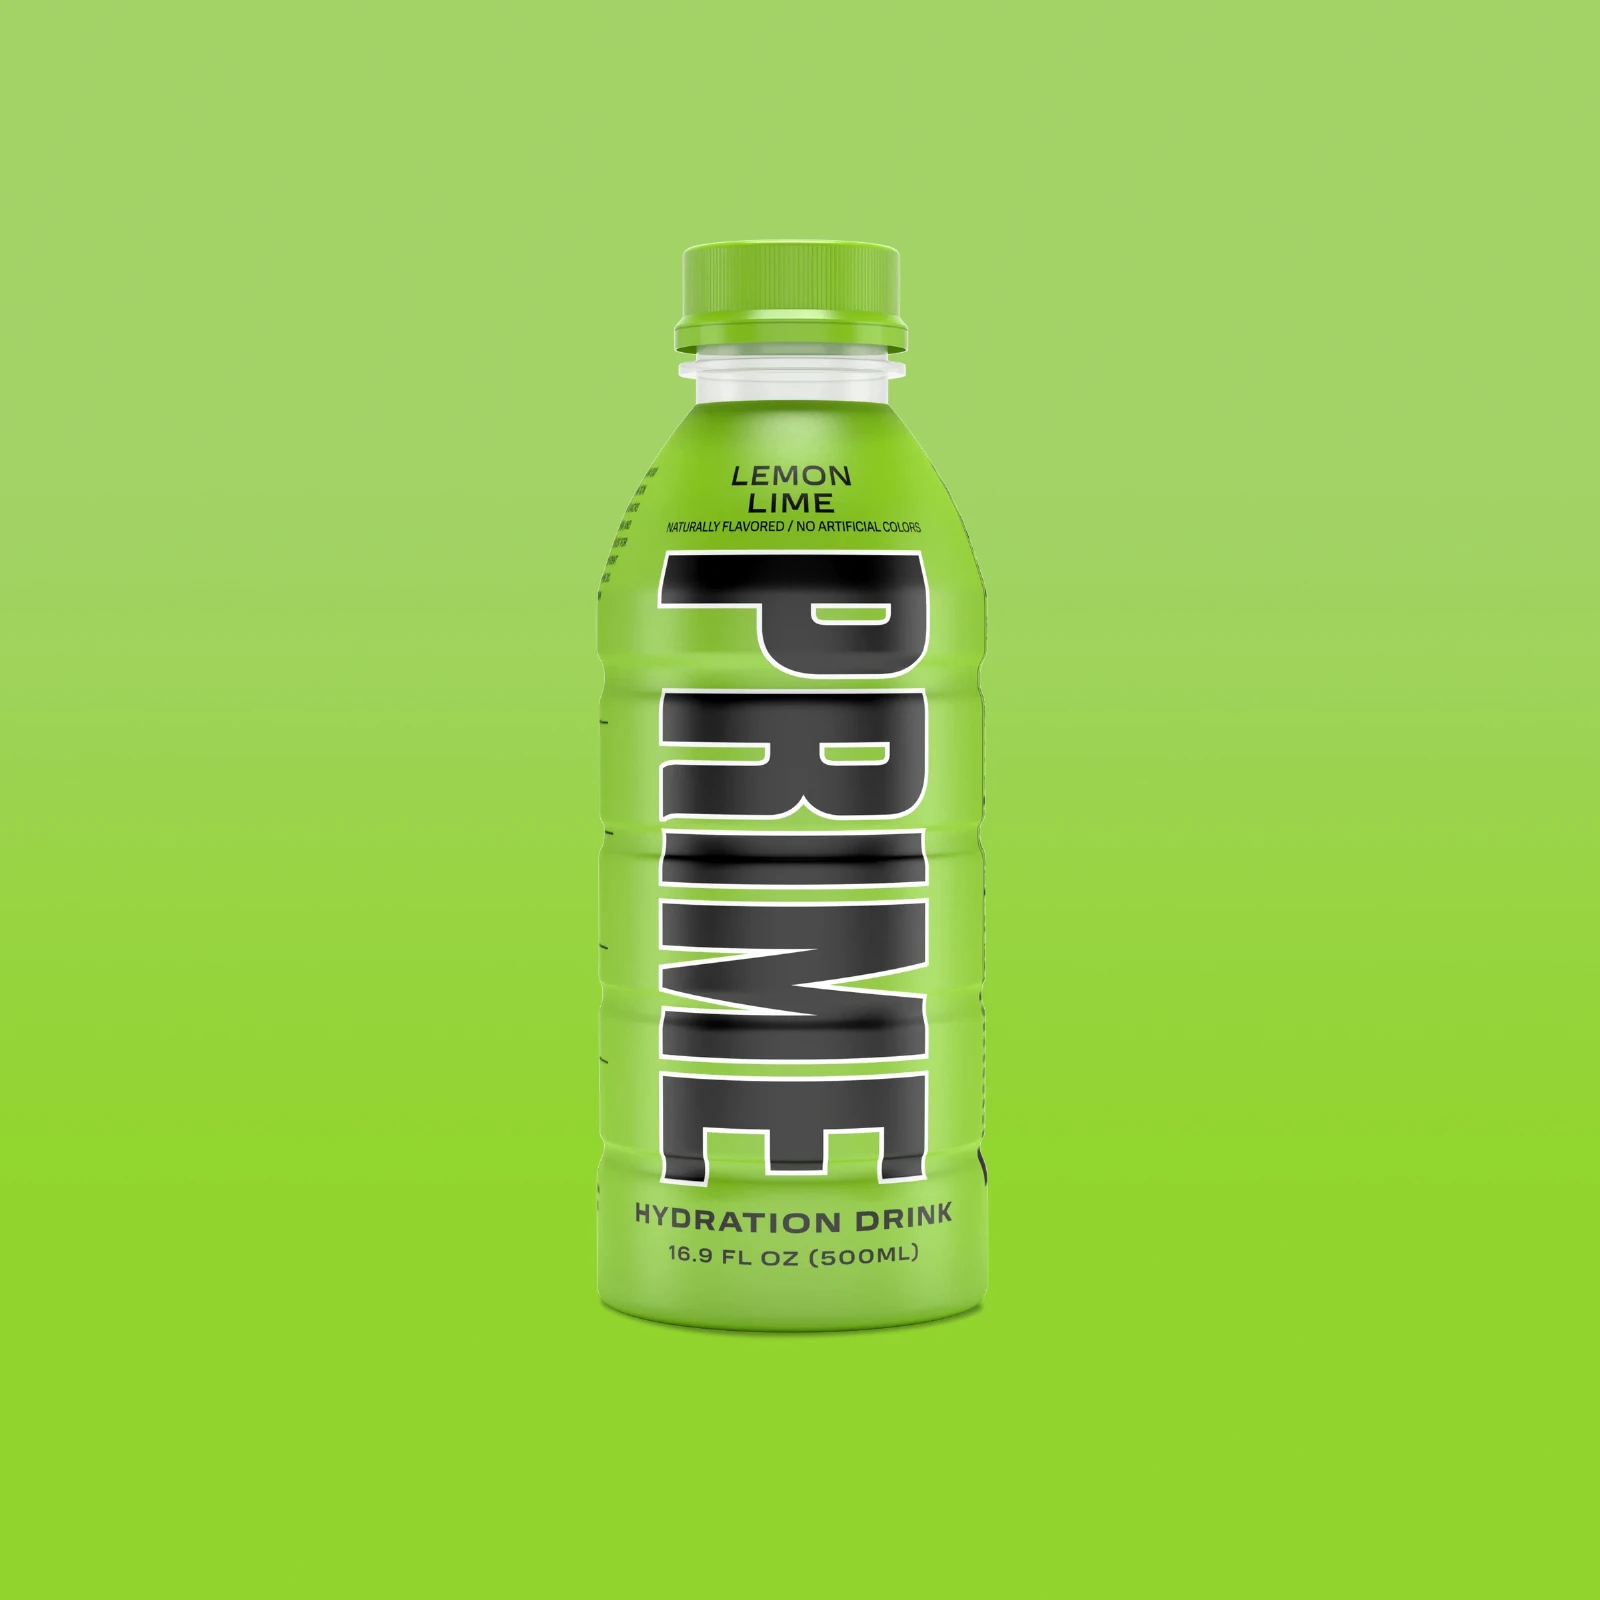 Prime Hydration - Sportdrink - Lemon Lime - 500 ml - Energy Drink von Logan Paul und KSI - Aus den USA 1